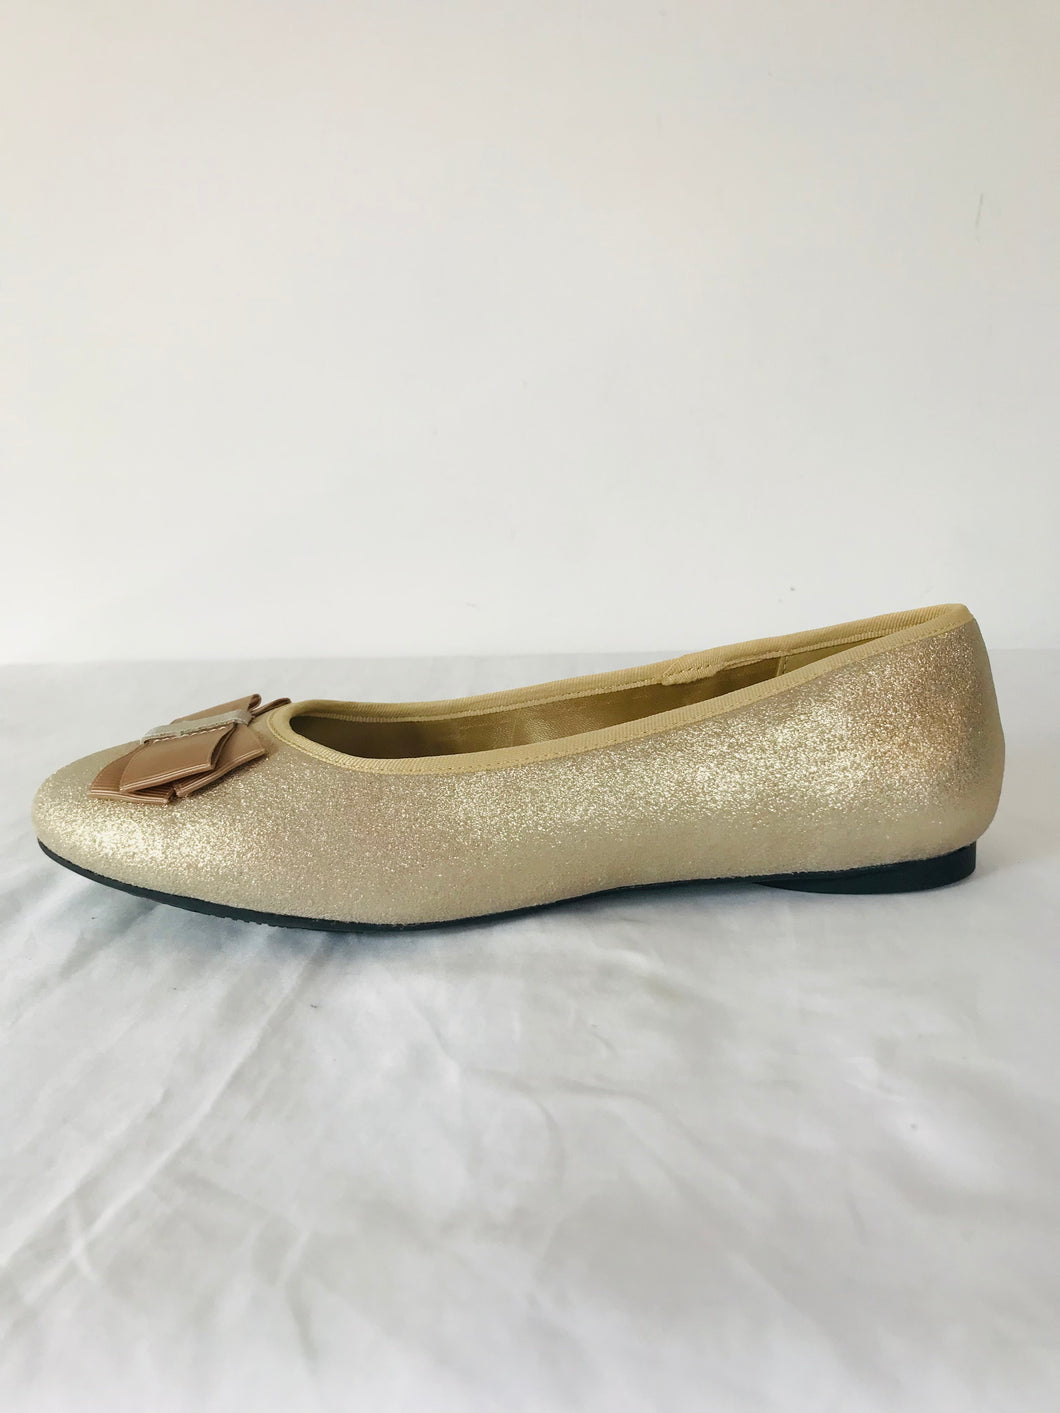 Lands' End Women’s Glitter Metallic Ballerina Flats Shoes | UK5 | Gold